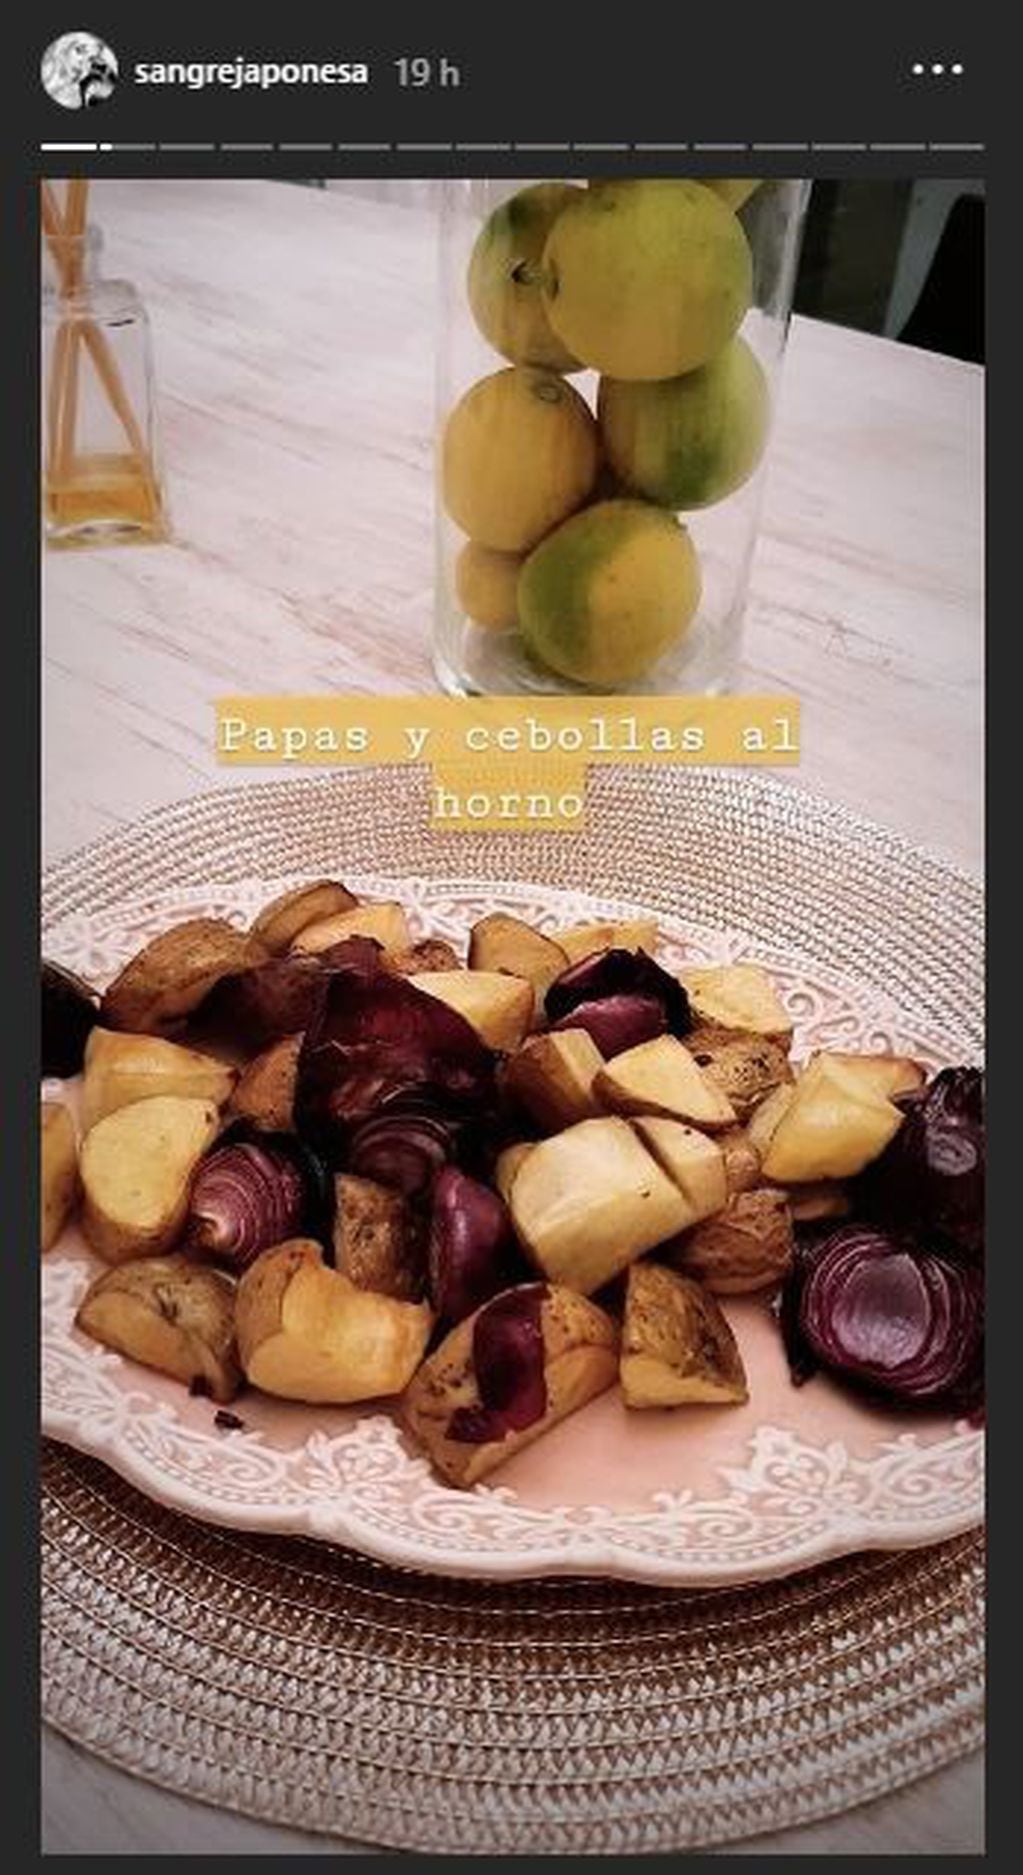 La China Suárez mostró los platos que cocinó para su familia (Instagram/ sangrejaponesa)